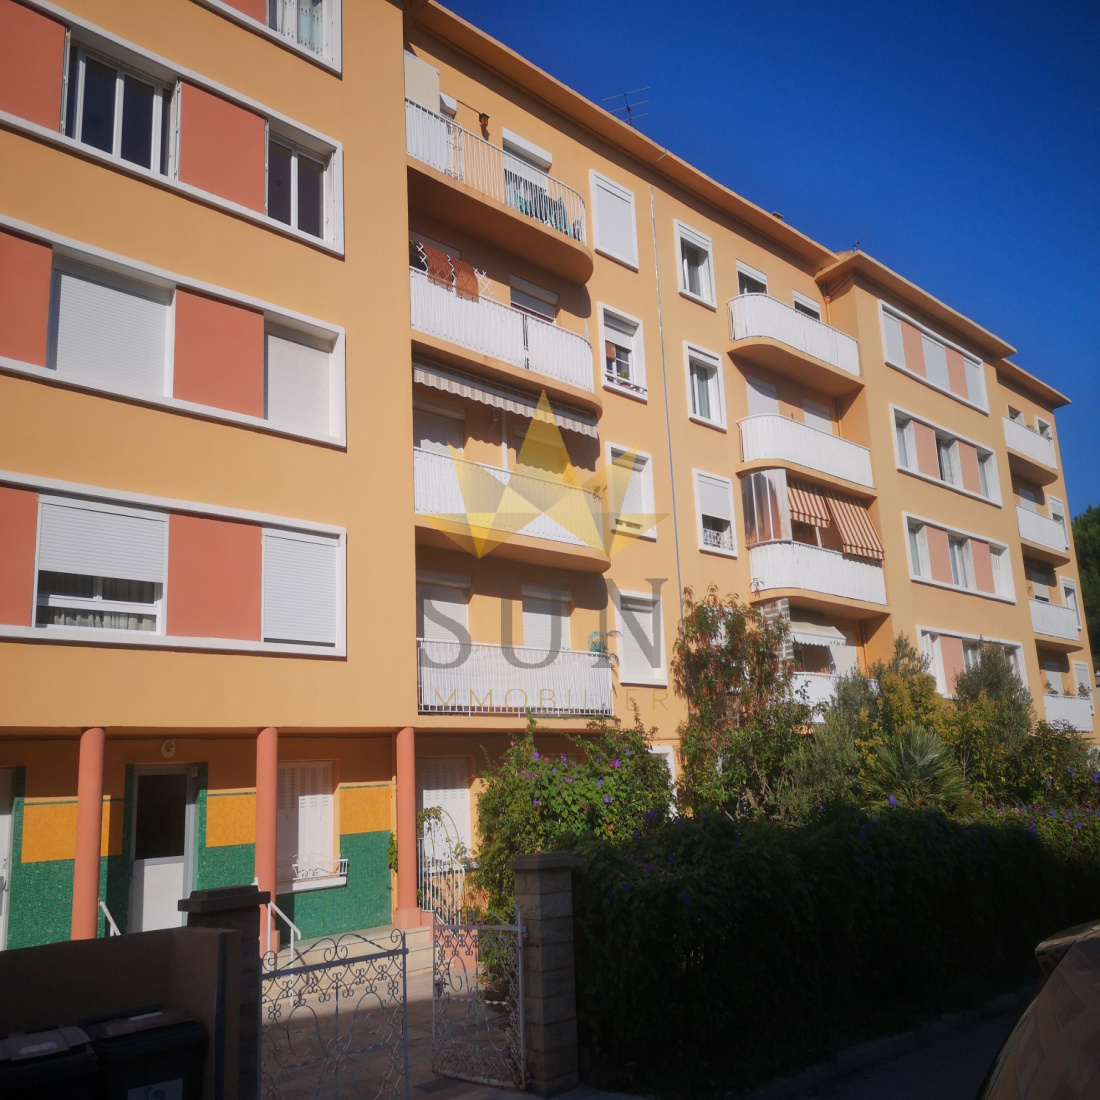 Vente Appartement 58m² 3 Pièces à La Seyne-sur-Mer (83500) - Sun Immobilier Toulon